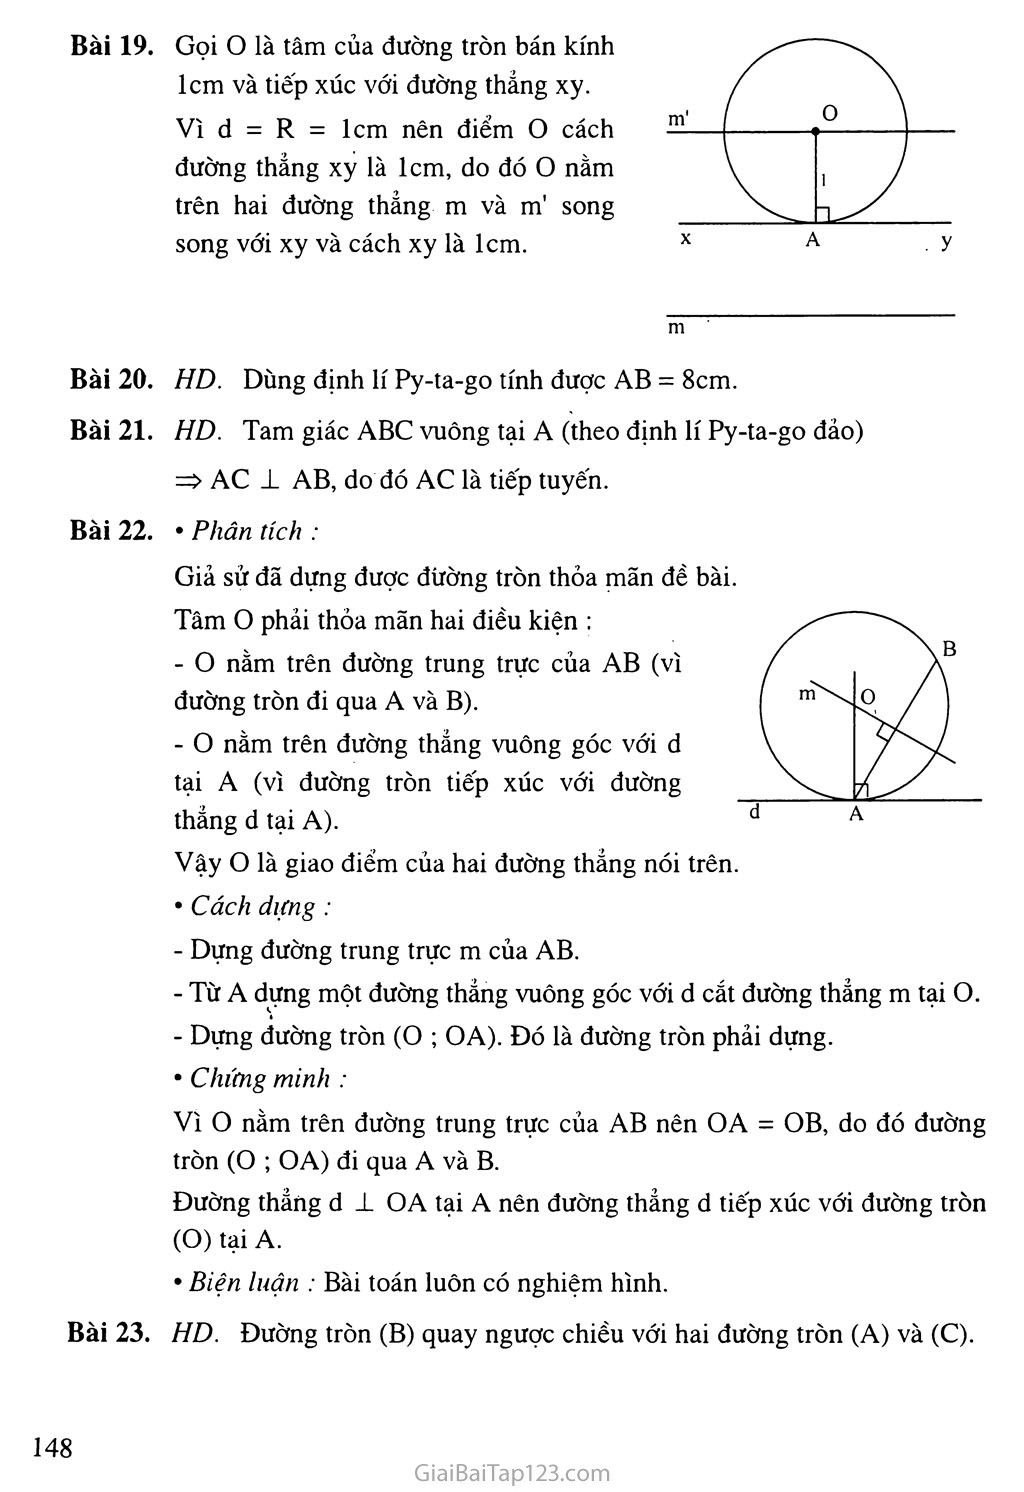 Bài 4. Vi trí tương đối của đường thẳng và đường tròn + 
Bài 5. Dấu hiệu nhận biết tiếp tuyến của đường tròn trang 3